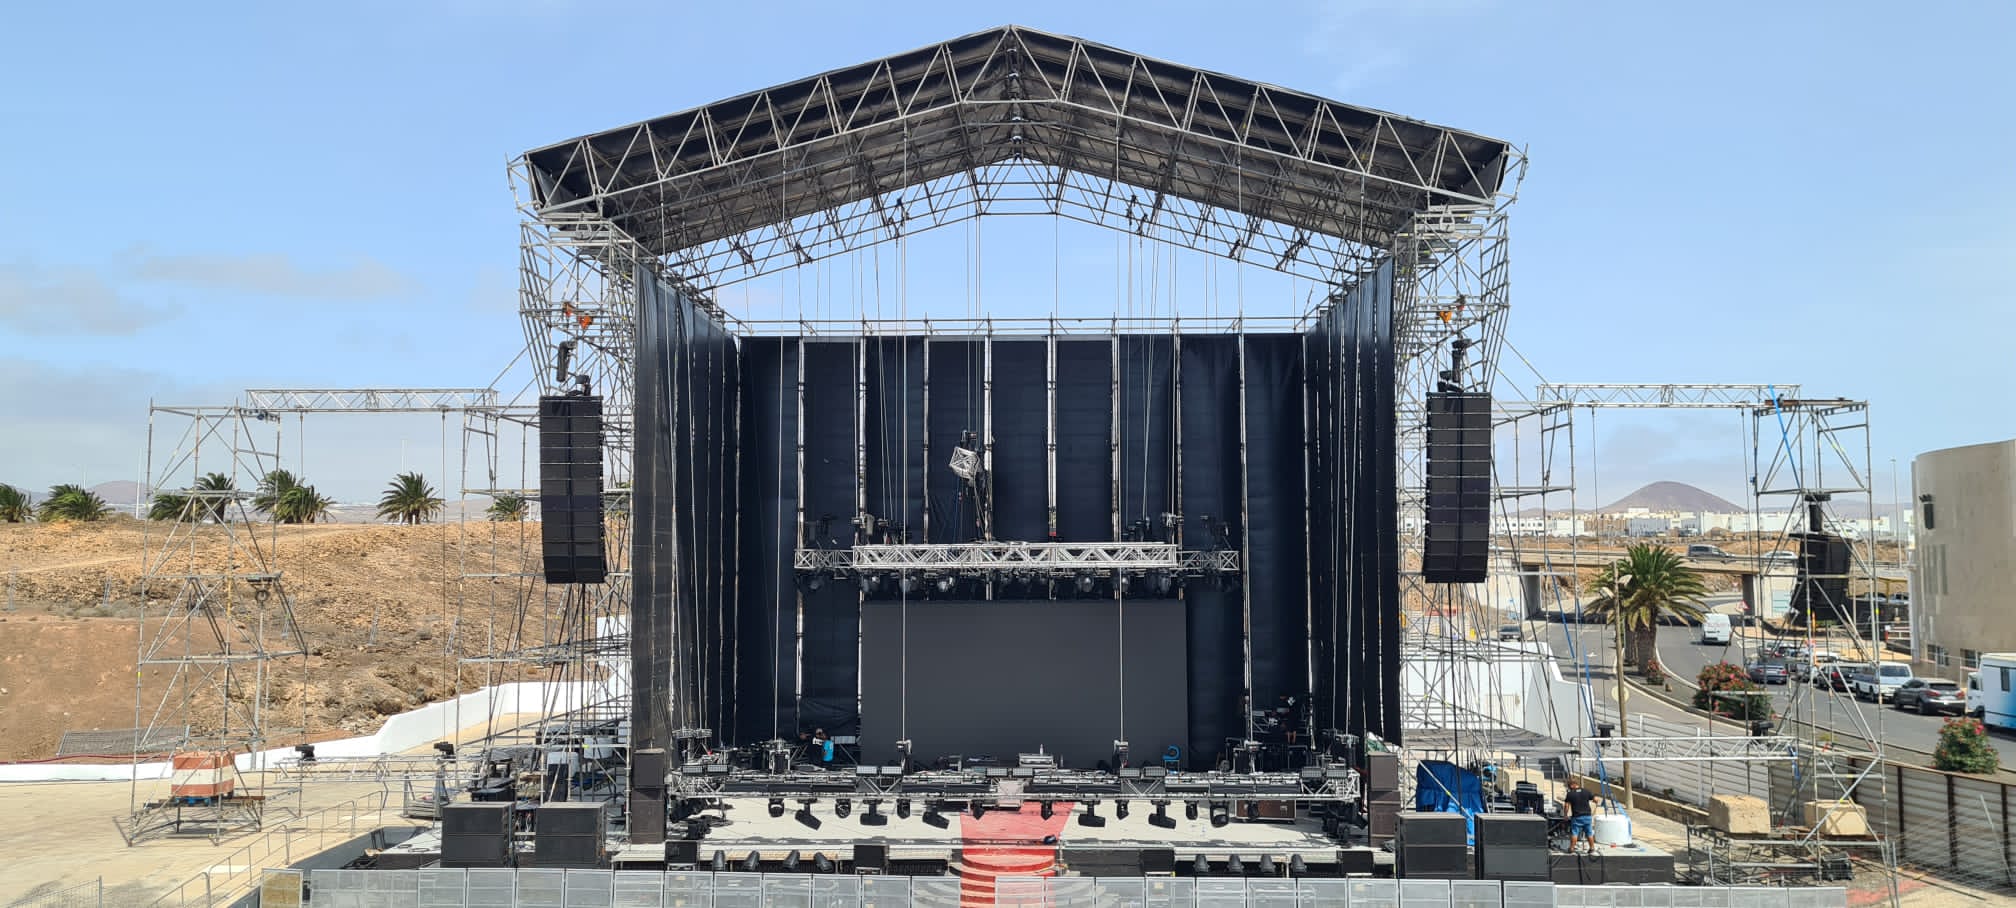 El escenario del Recinto Ferial, preparado para el concierto de Luis Fonsi